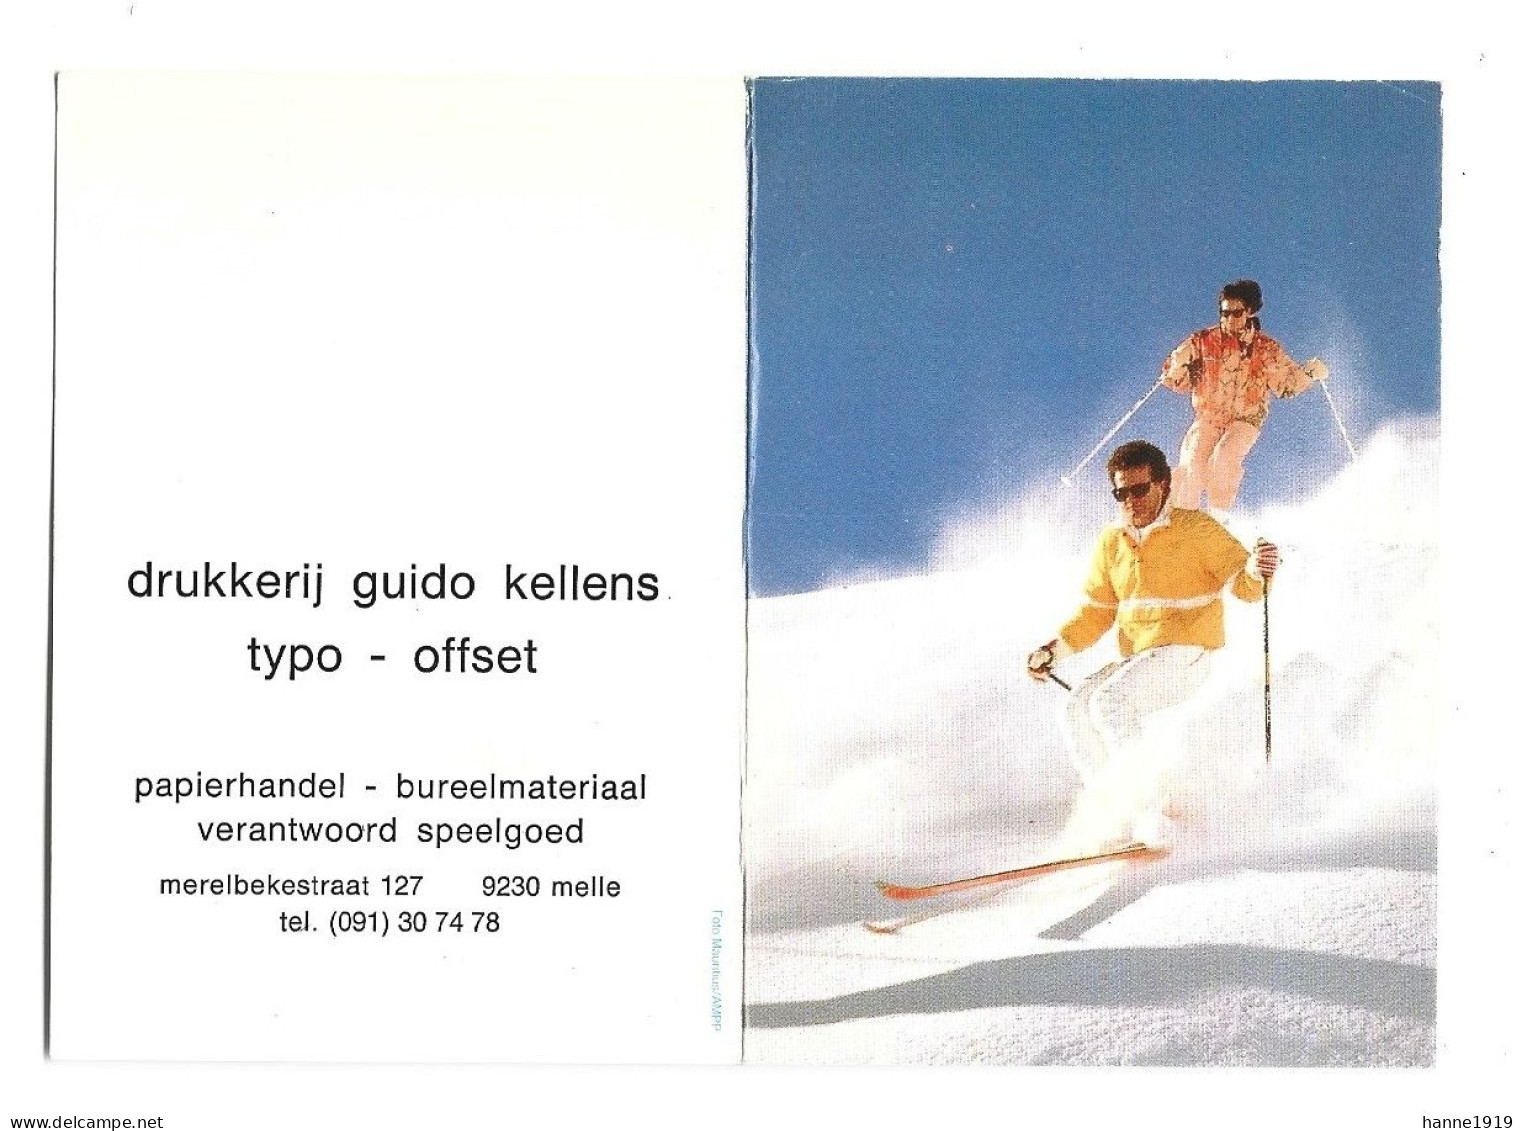 Melle Merelbekestraat Drukkerij Guido Kellens Kalender 1990 Calendrier Htje - Klein Formaat: 1981-90